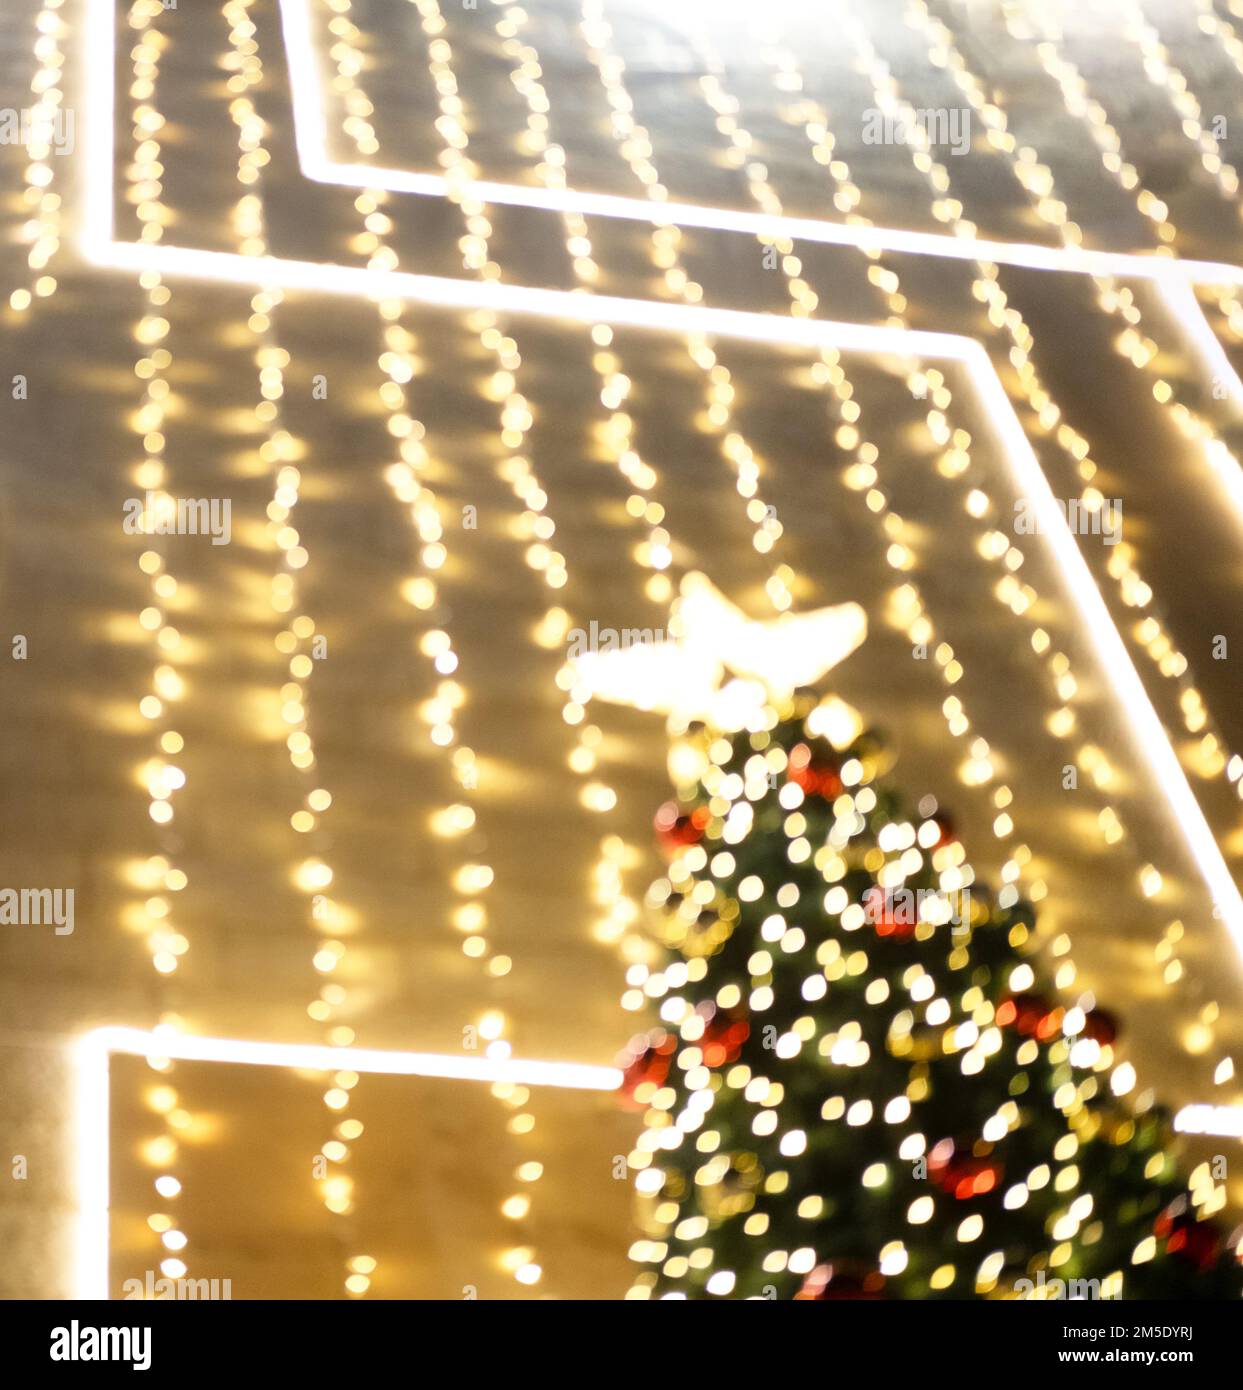 Le luci dei ghirlande sull'albero di Natale con le sfere rosse sono fuori fuoco. Foto Stock